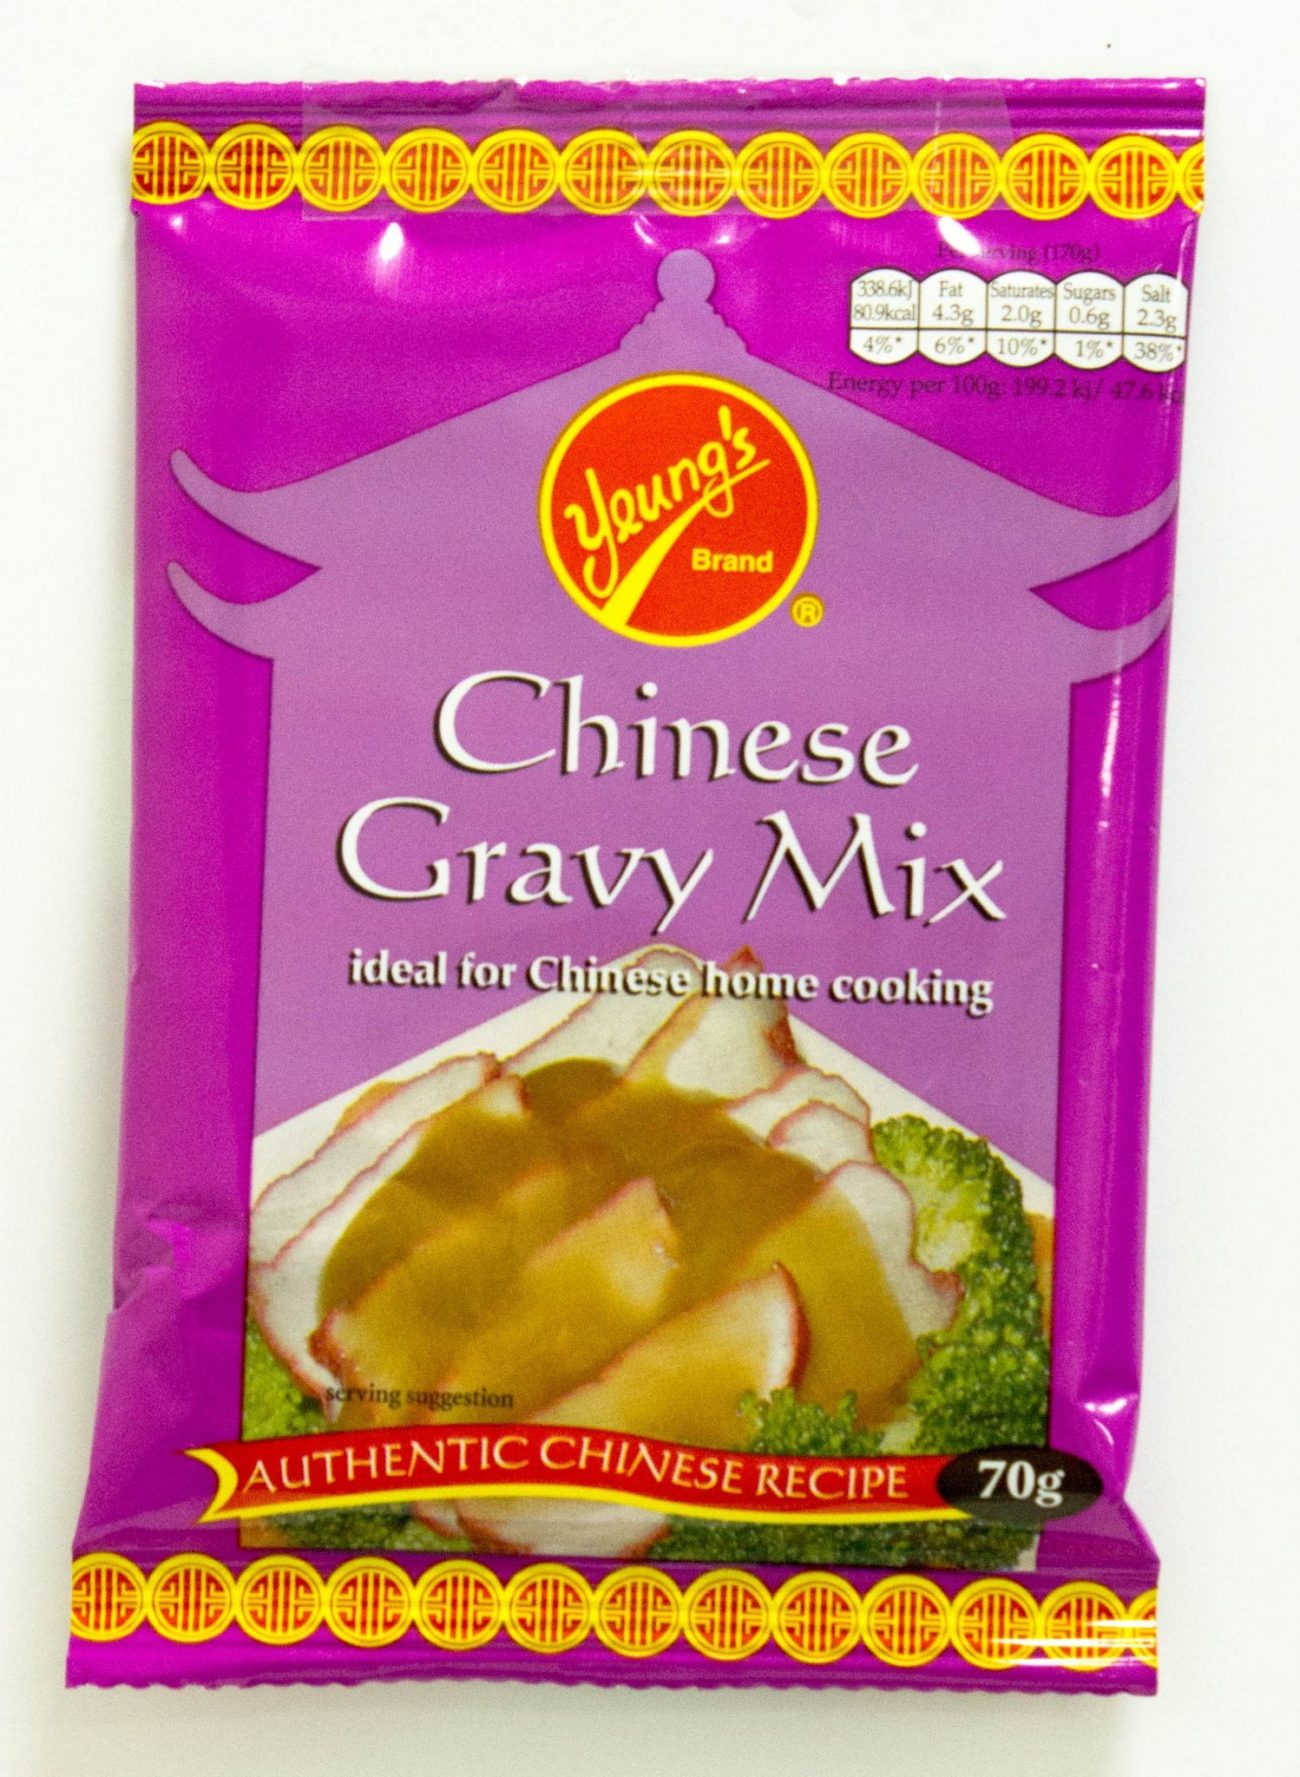 Chinese gravy mix